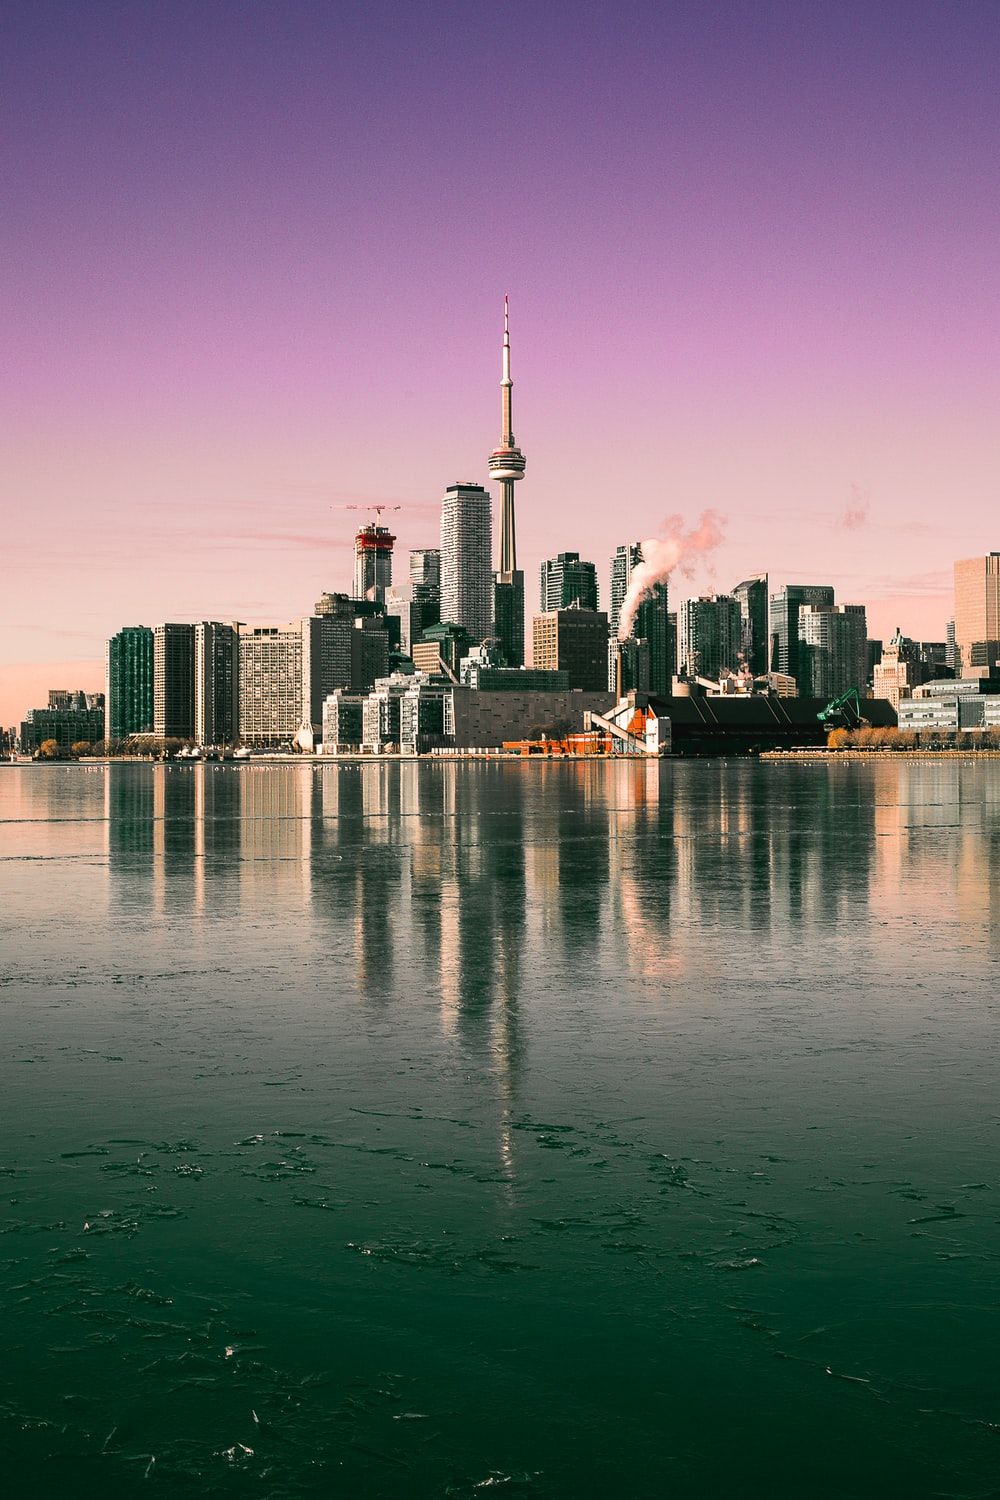 Needle tower during daytime photo – Free Toronto Image on Unsplash